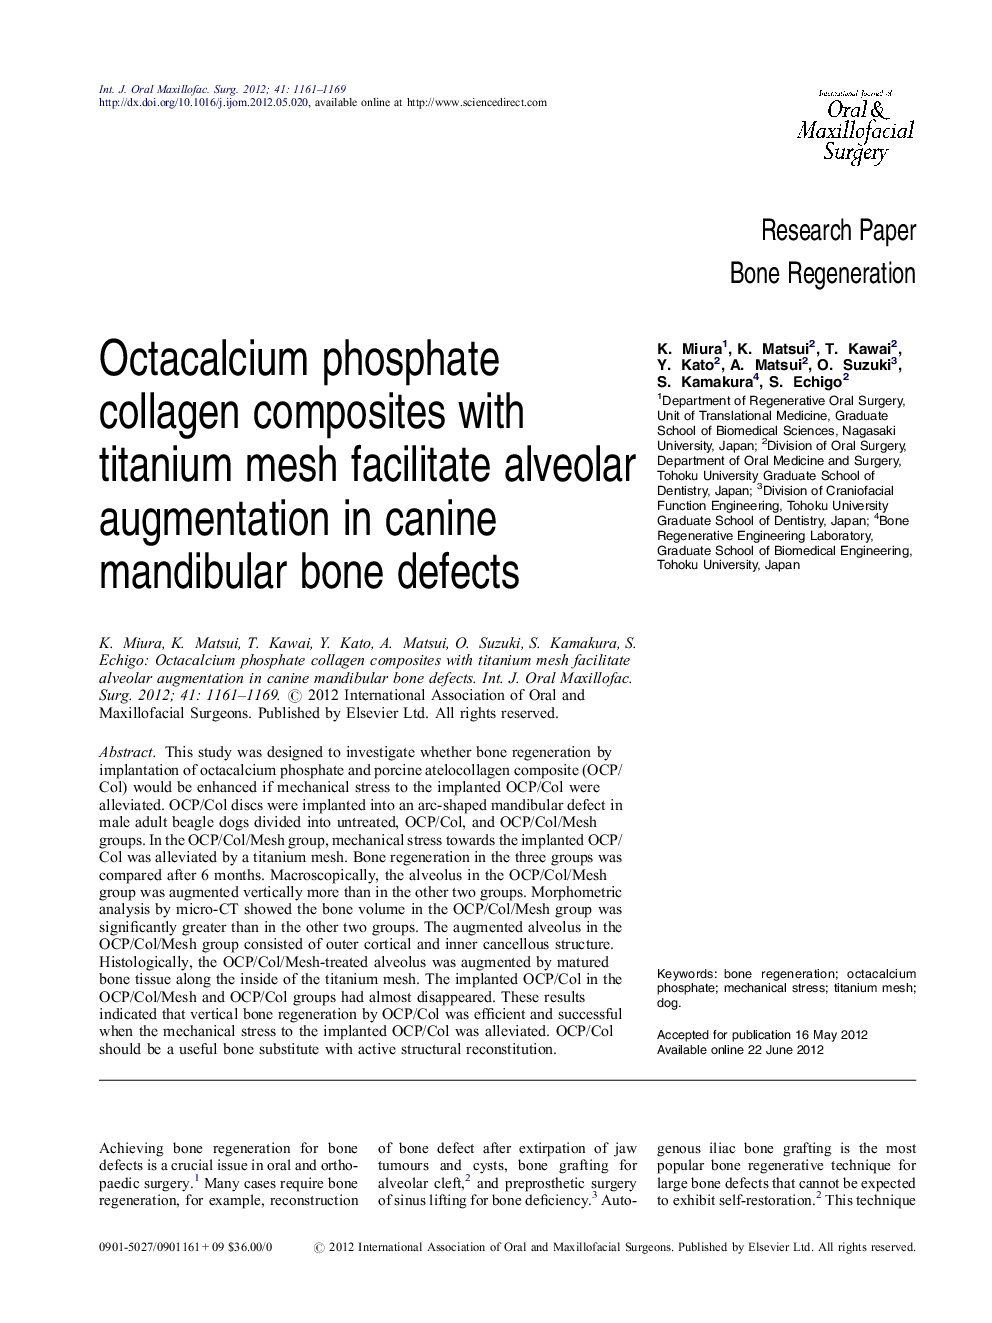 Octacalcium phosphate collagen composites with titanium mesh facilitate alveolar augmentation in canine mandibular bone defects